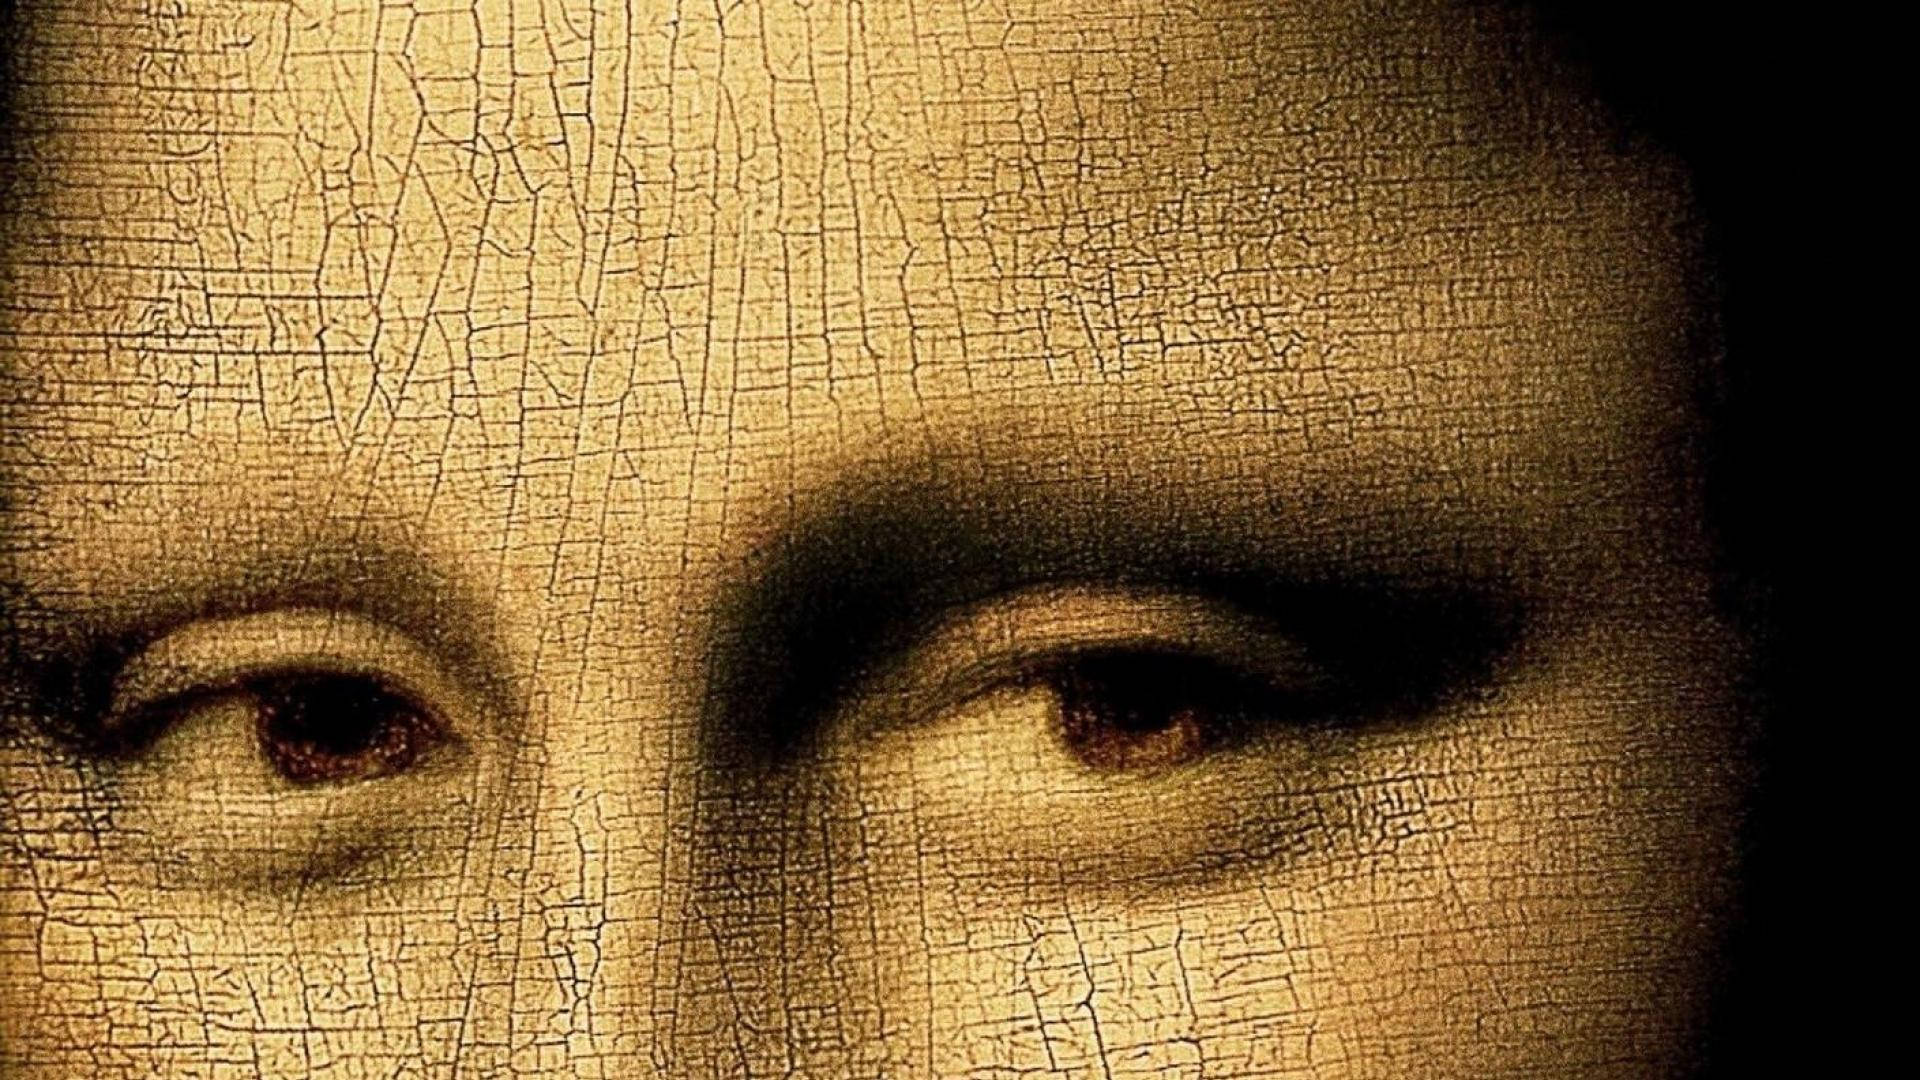 Losmisteriosos Ojos De La Mona Lisa Fondo de pantalla